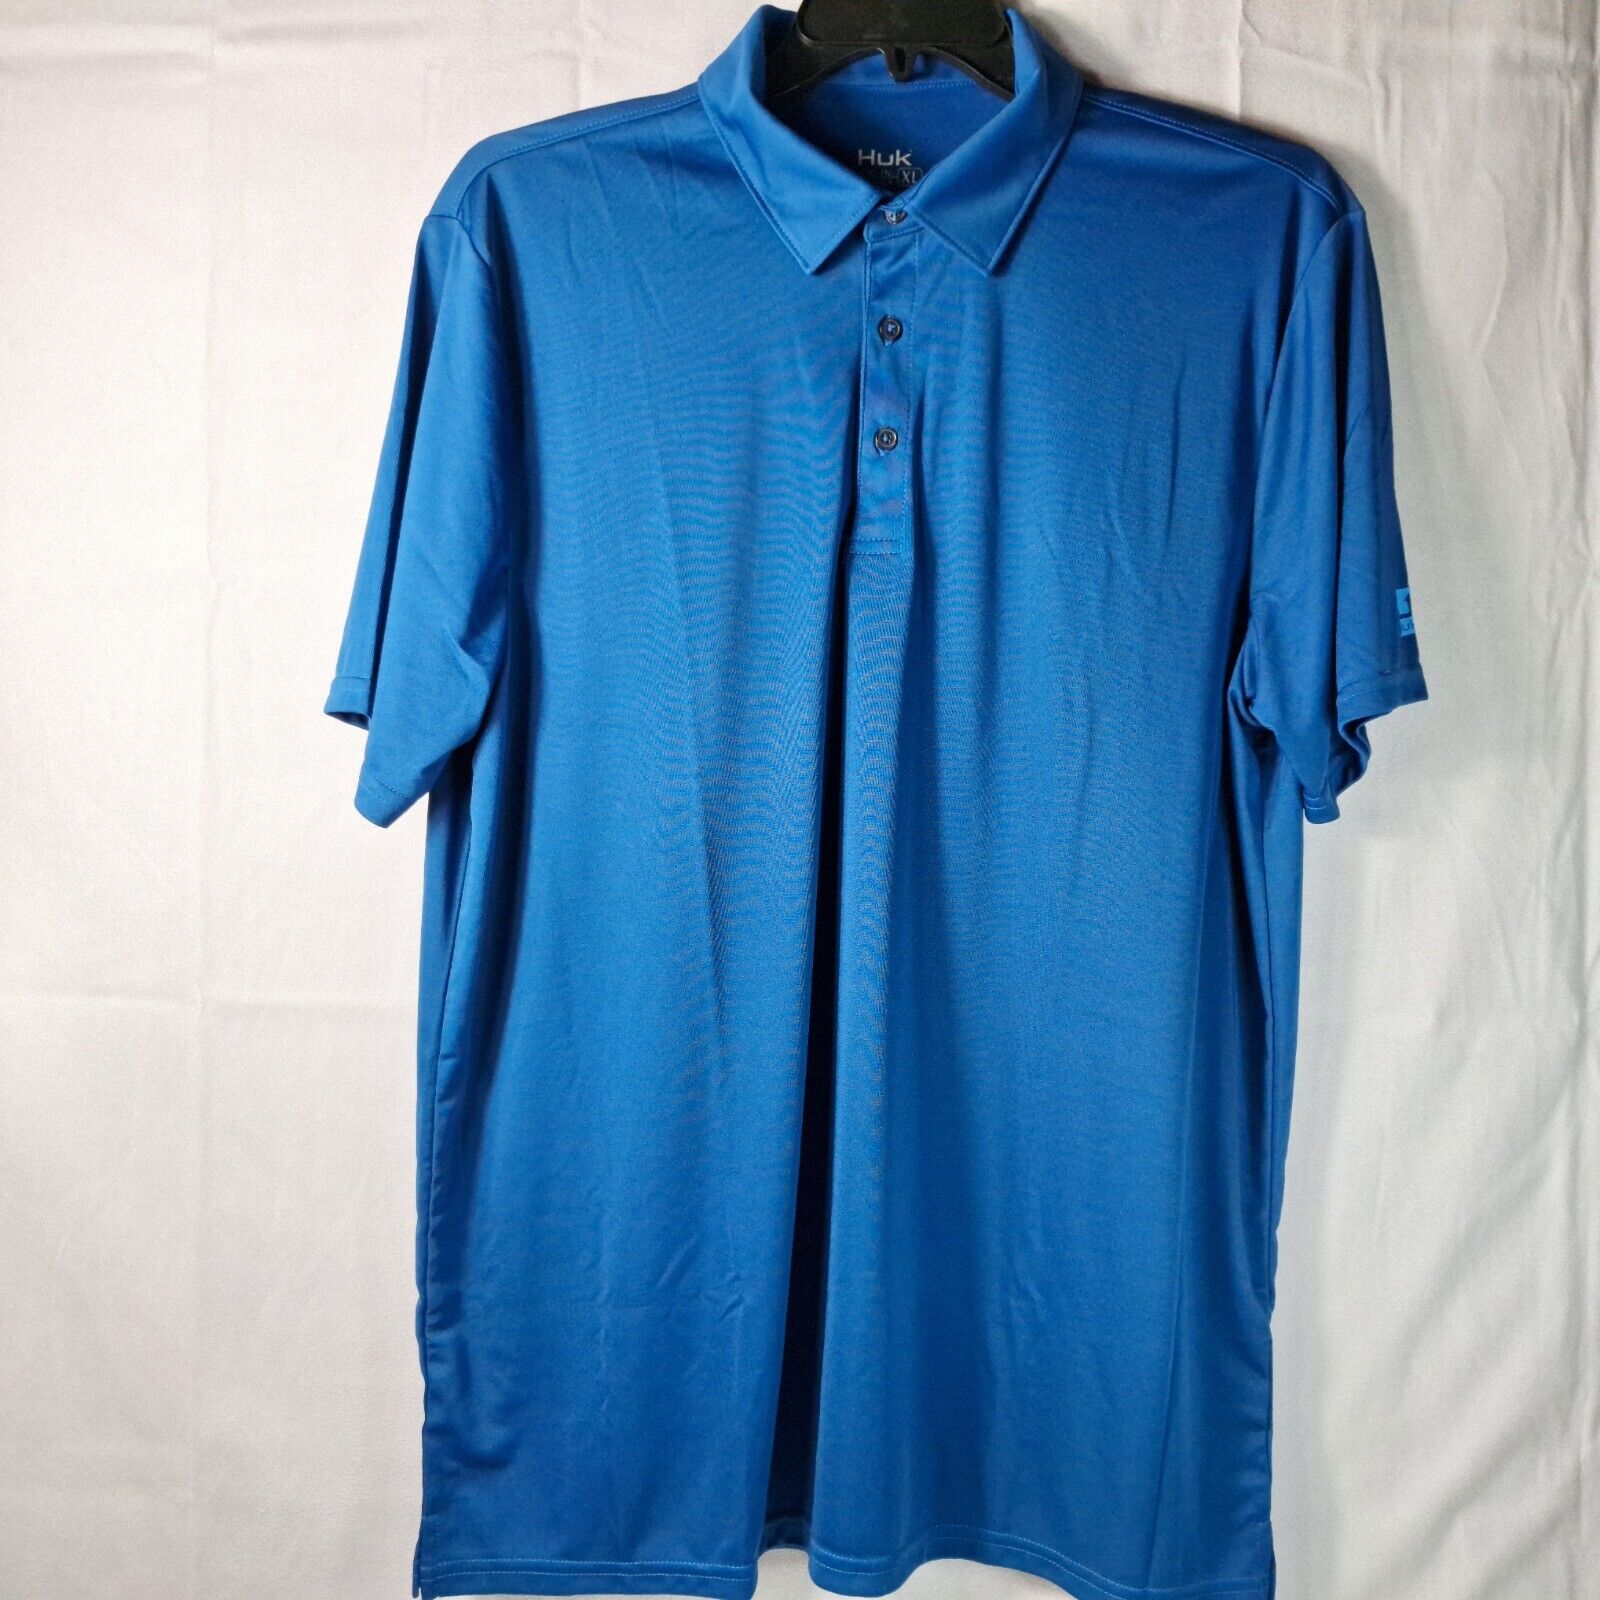 HUK Polo Shirt Mens Sz XL Blue Short Sleeve Fishing Camping Hunting Outdoor